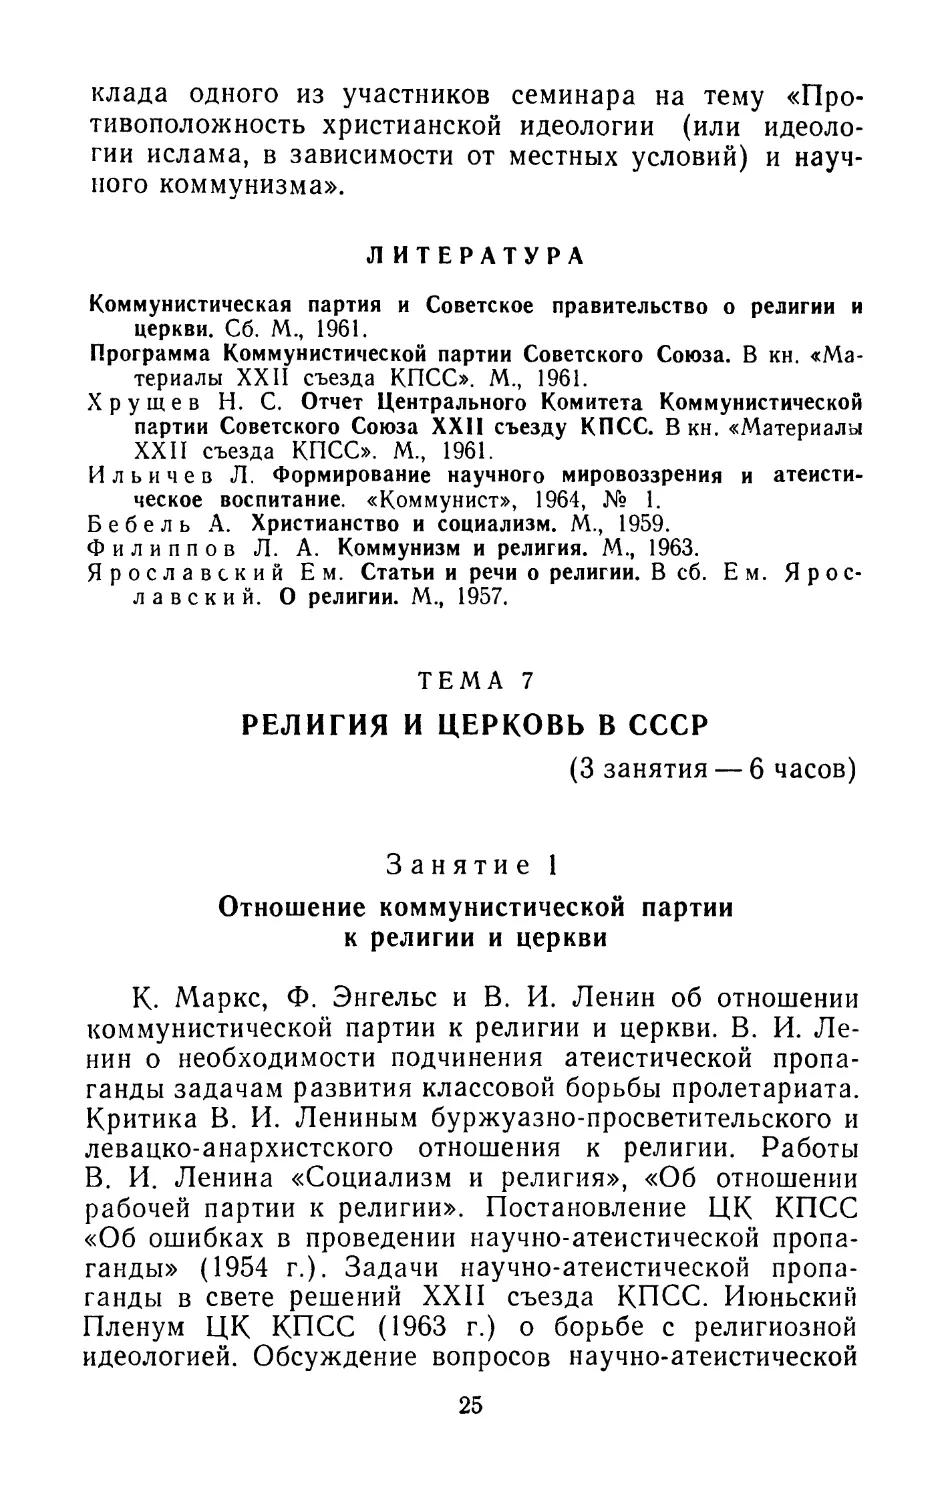 Литература
Тема 7. Религия и церковь в СССР